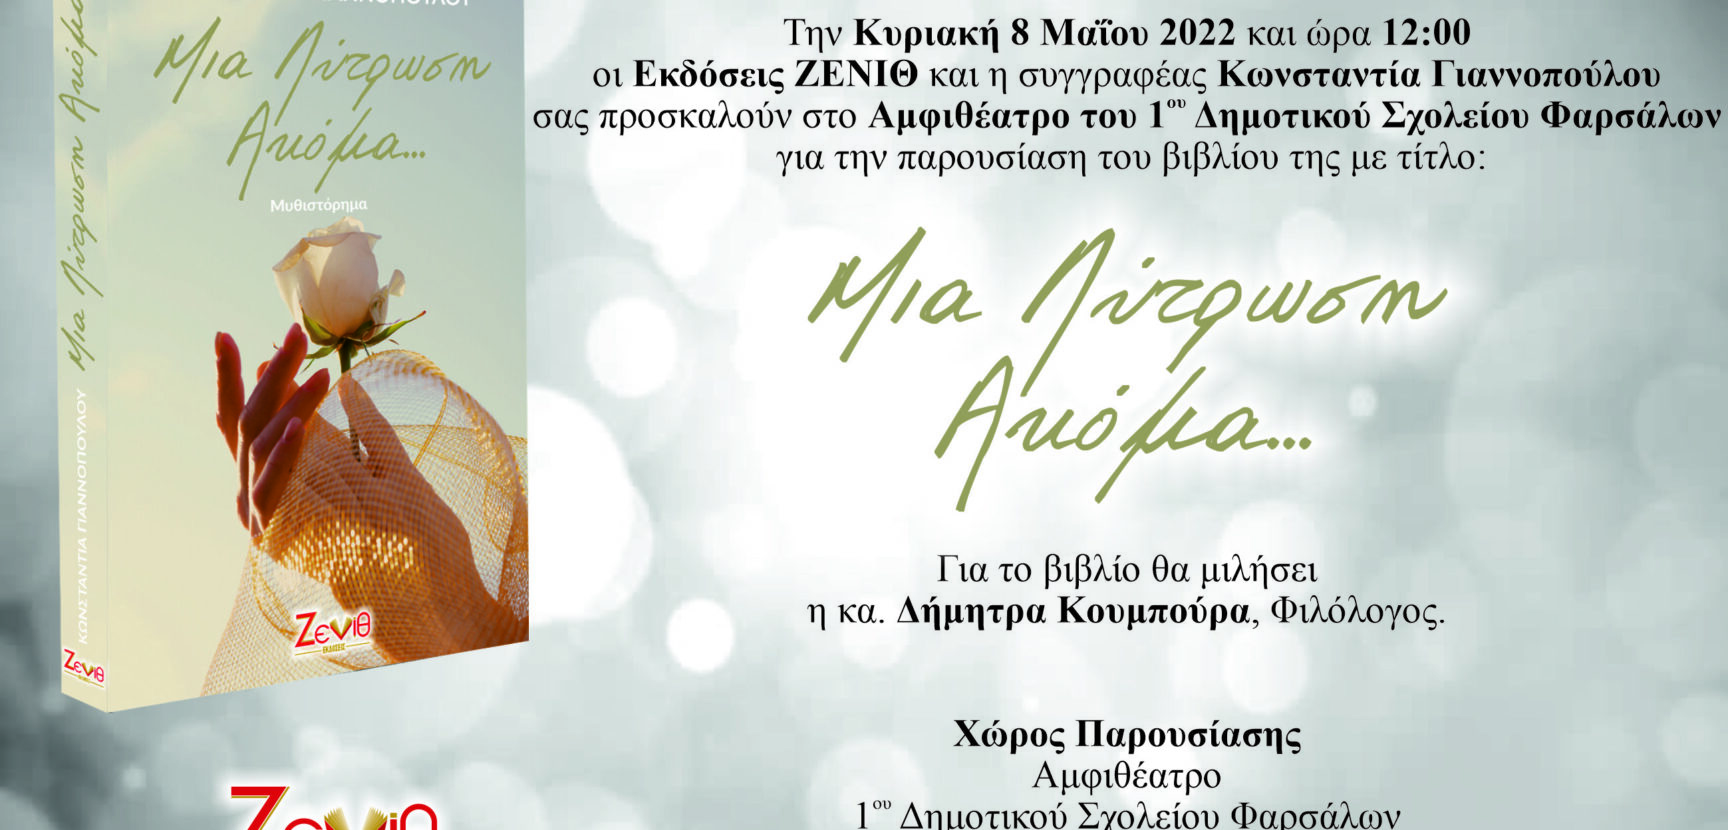 Κυριακή 8 Μαΐου 2022 και ώρα 12:00 η παρουσίαση του βιβλίου "Μια Λύτρωση Ακόμα..." της Κωνσταντίας Γιαννοπούλου